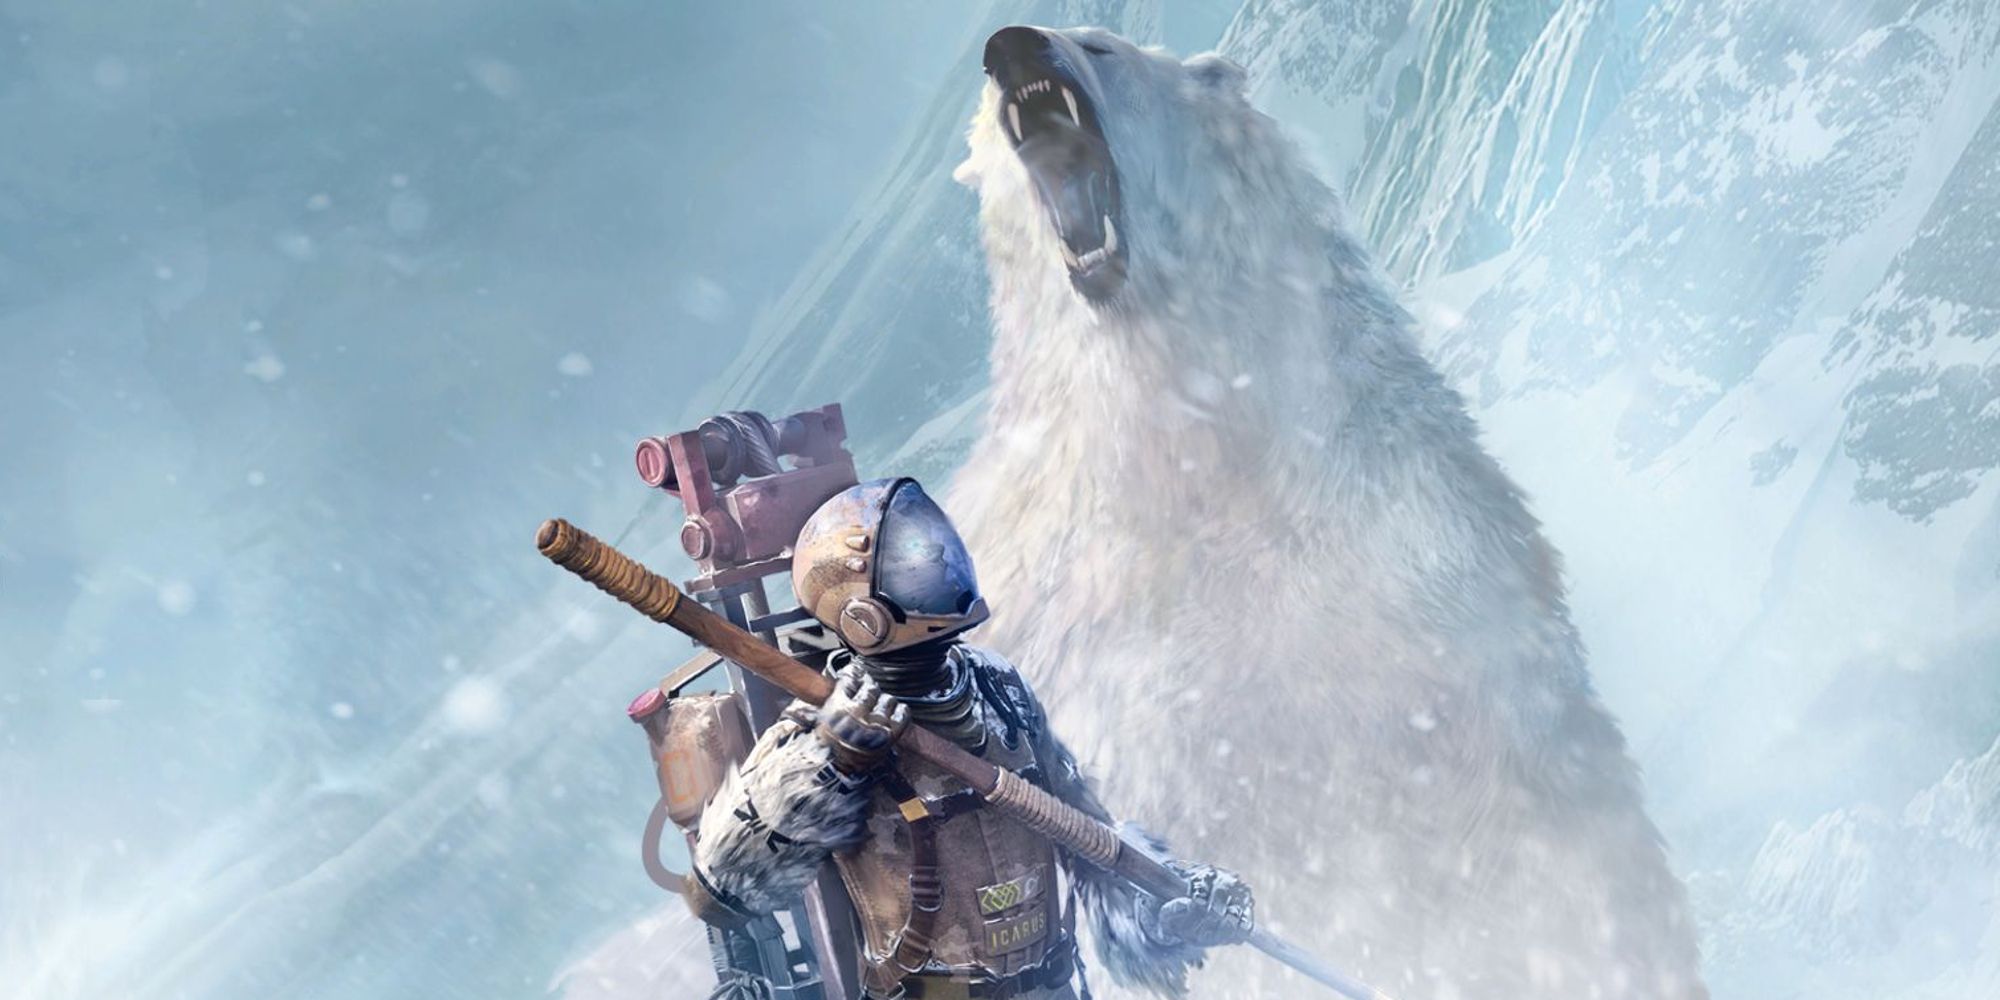 polar bear attacking player